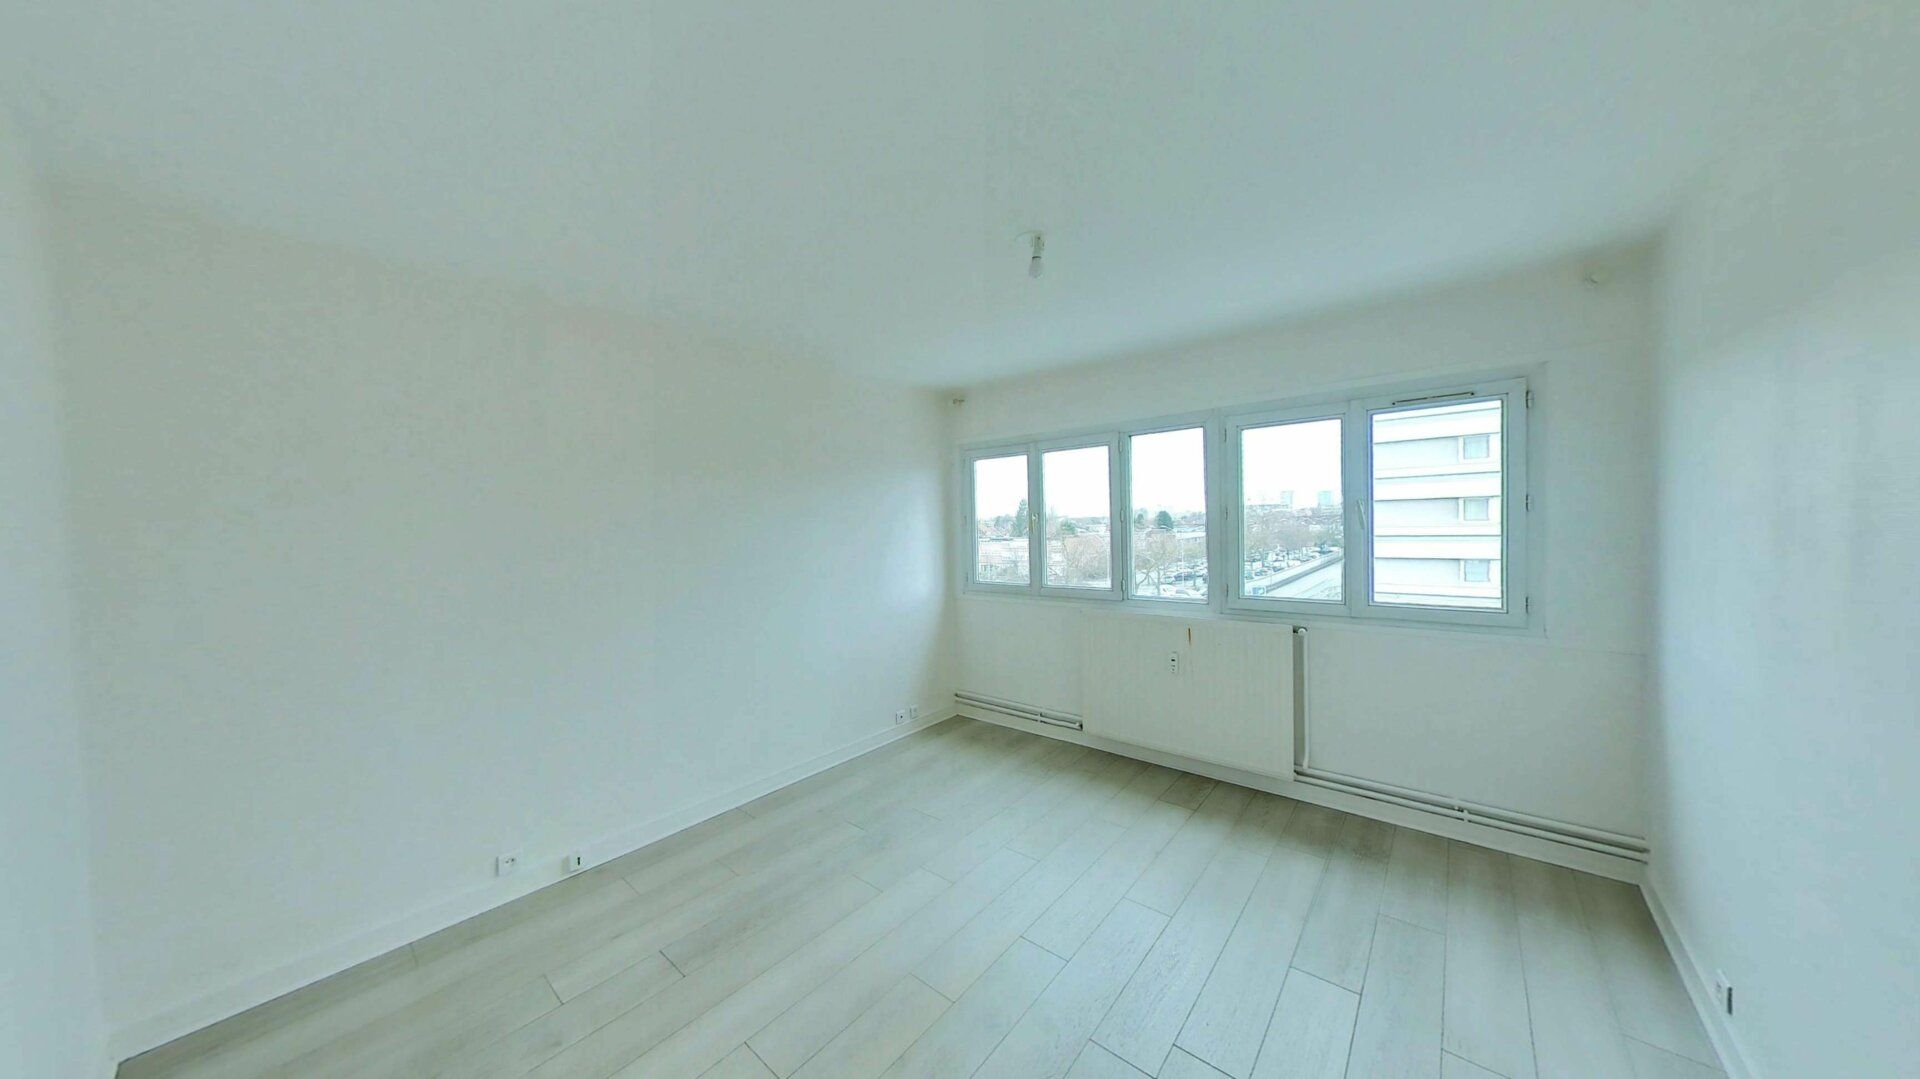 Appartement à vendre 3 72m2 à Mons-en-Baroeul vignette-2